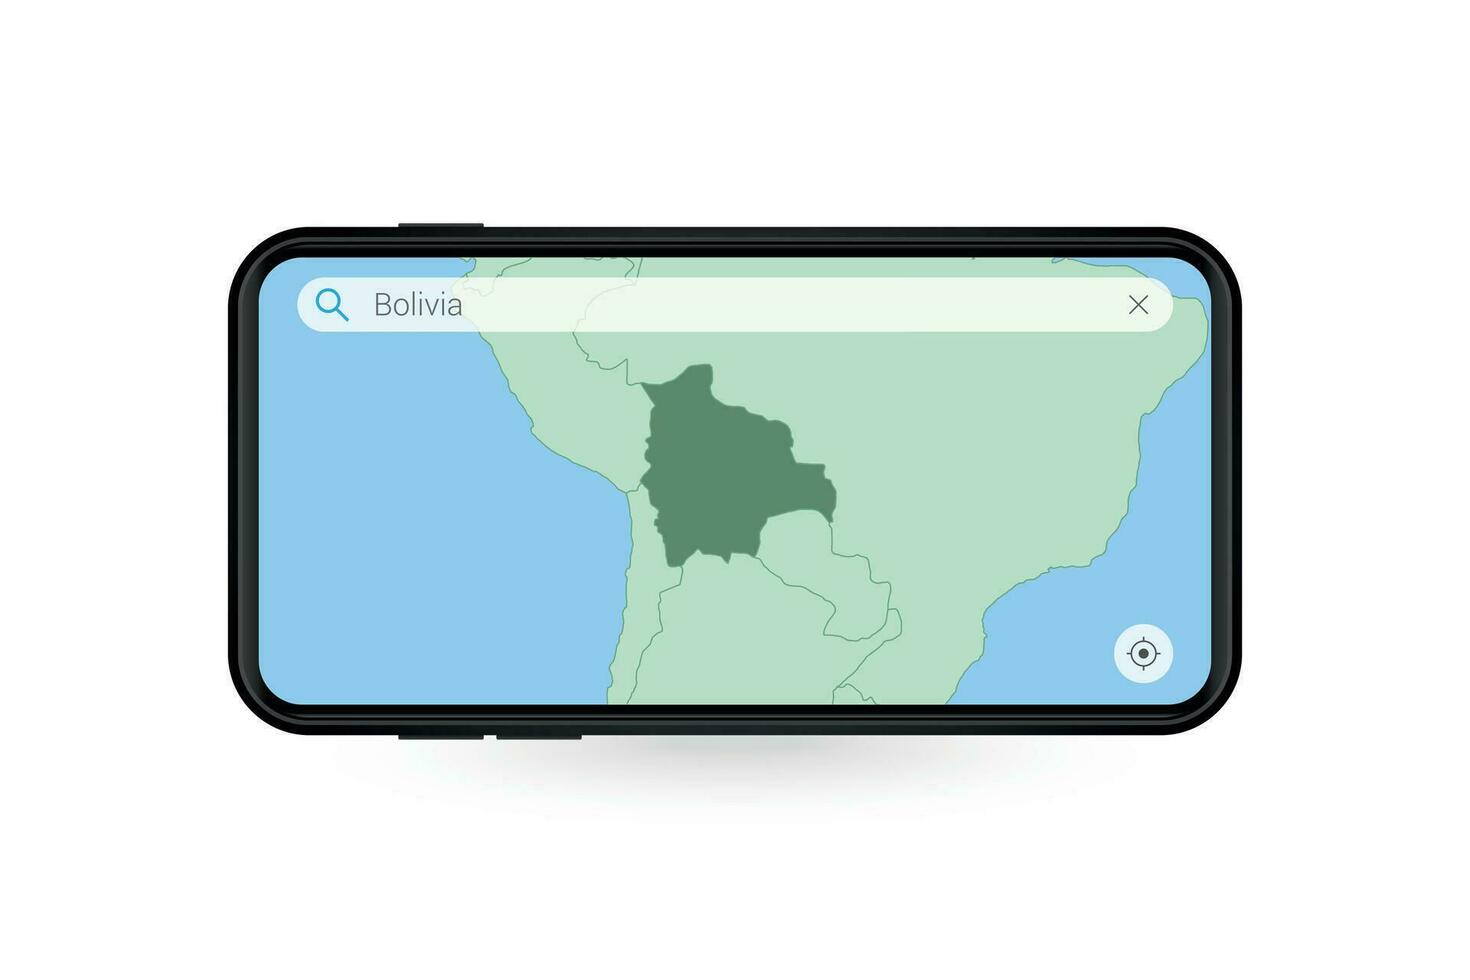 buscando mapa de bolivia en teléfono inteligente mapa solicitud. mapa de bolivia en célula teléfono. vector